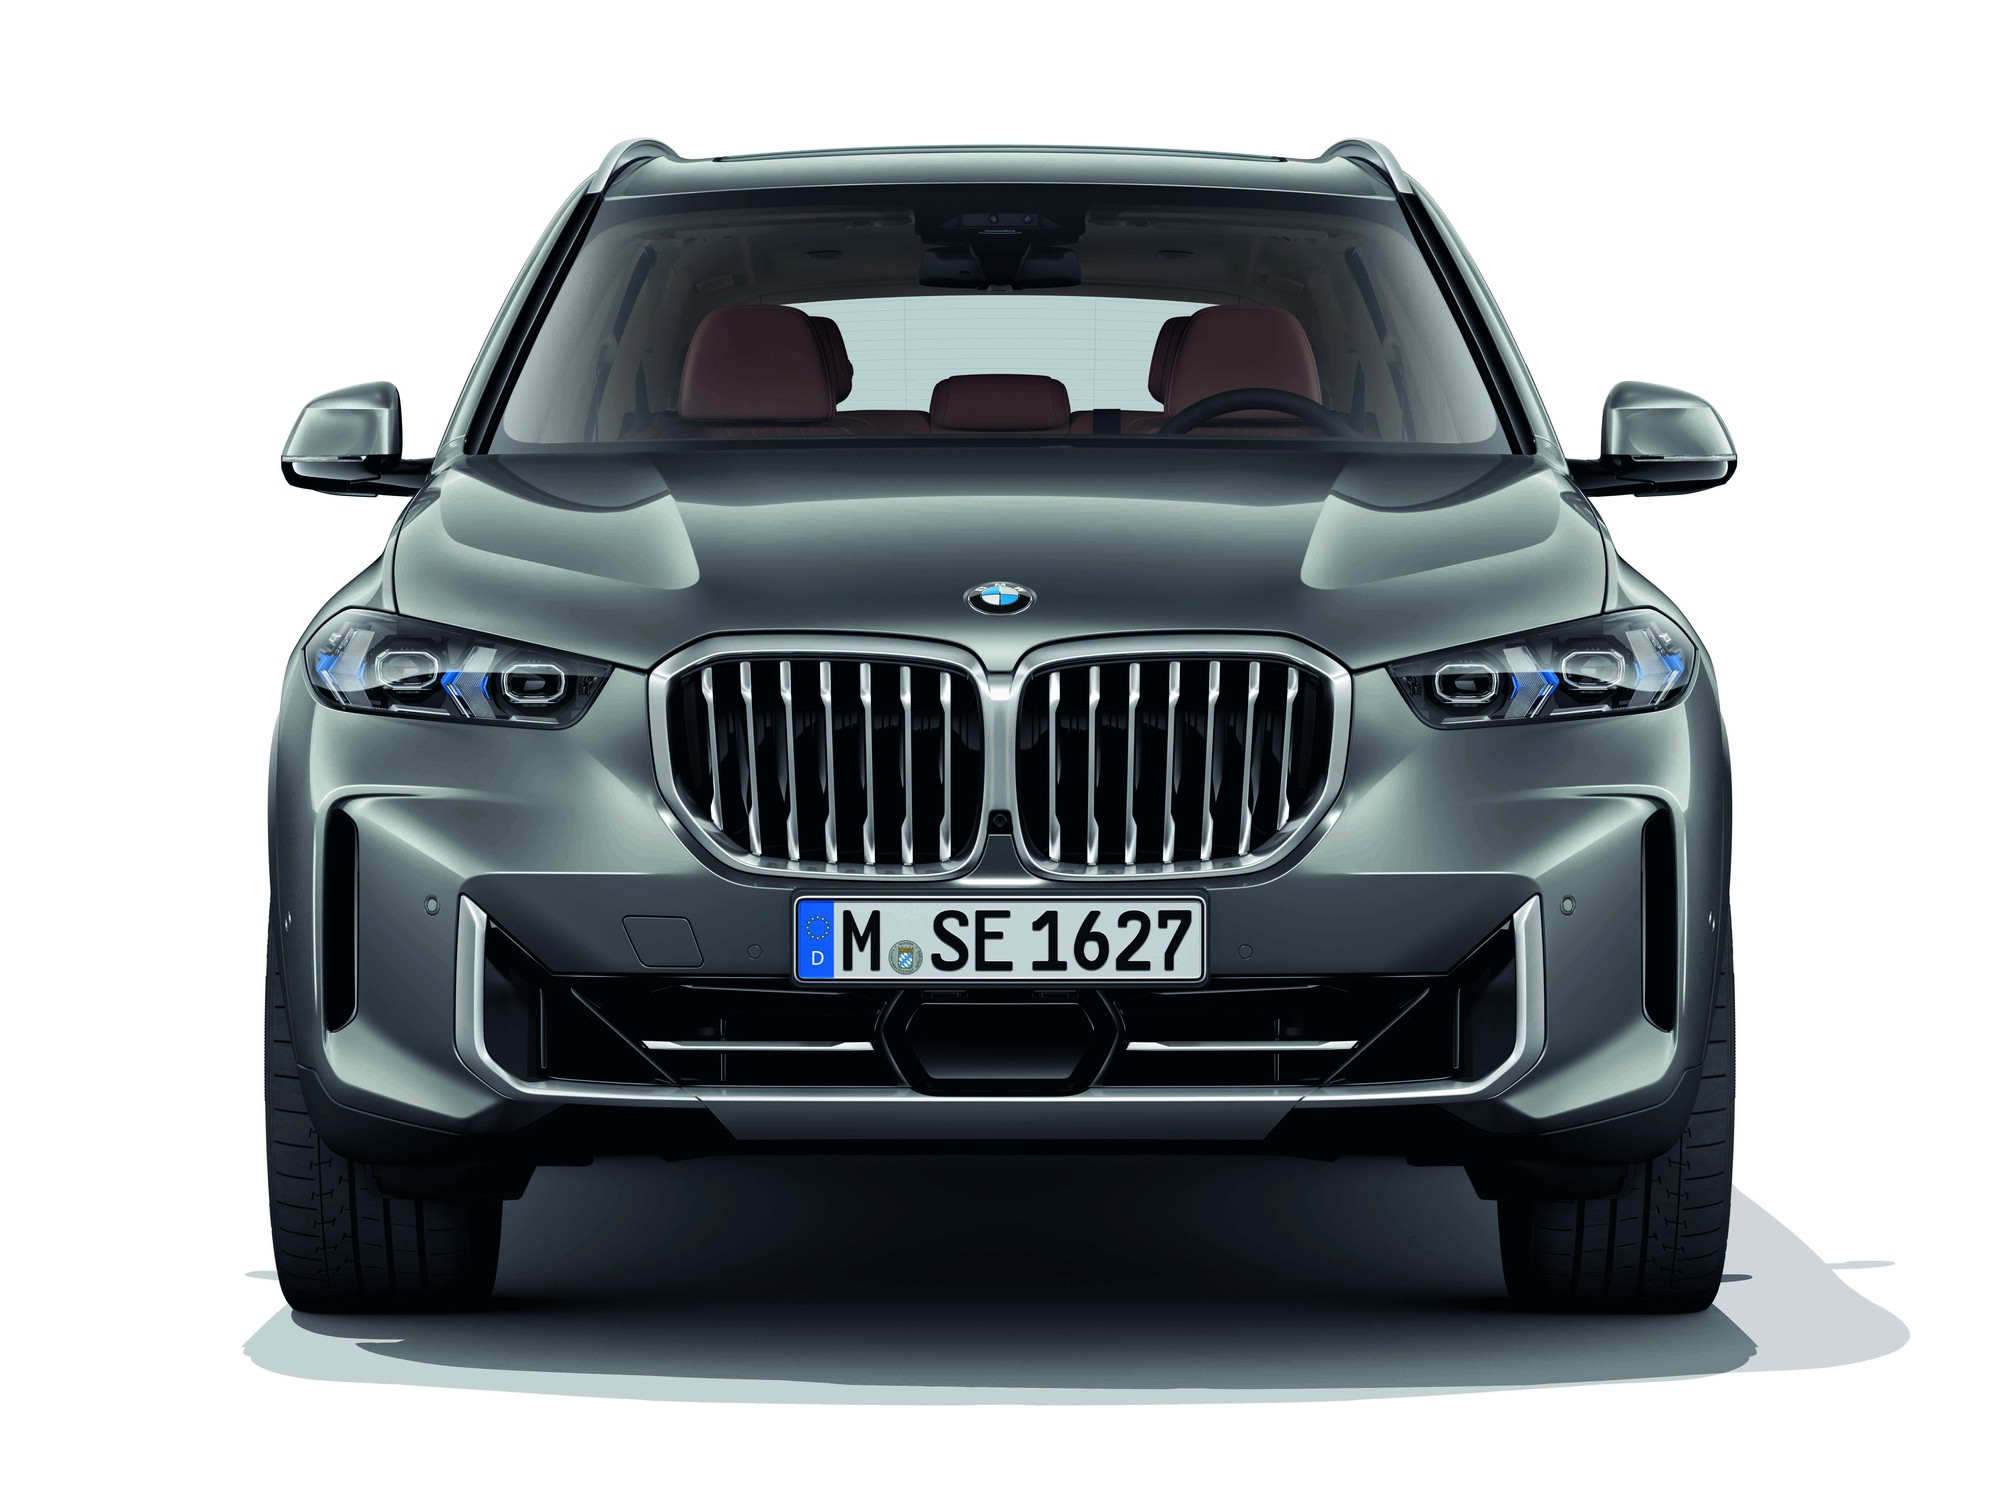 Siêu phẩm BMW XM VÀ X5 mới chính thức &quot;chào làng&quot; tại thị trường Việt Nam - Ảnh 1.